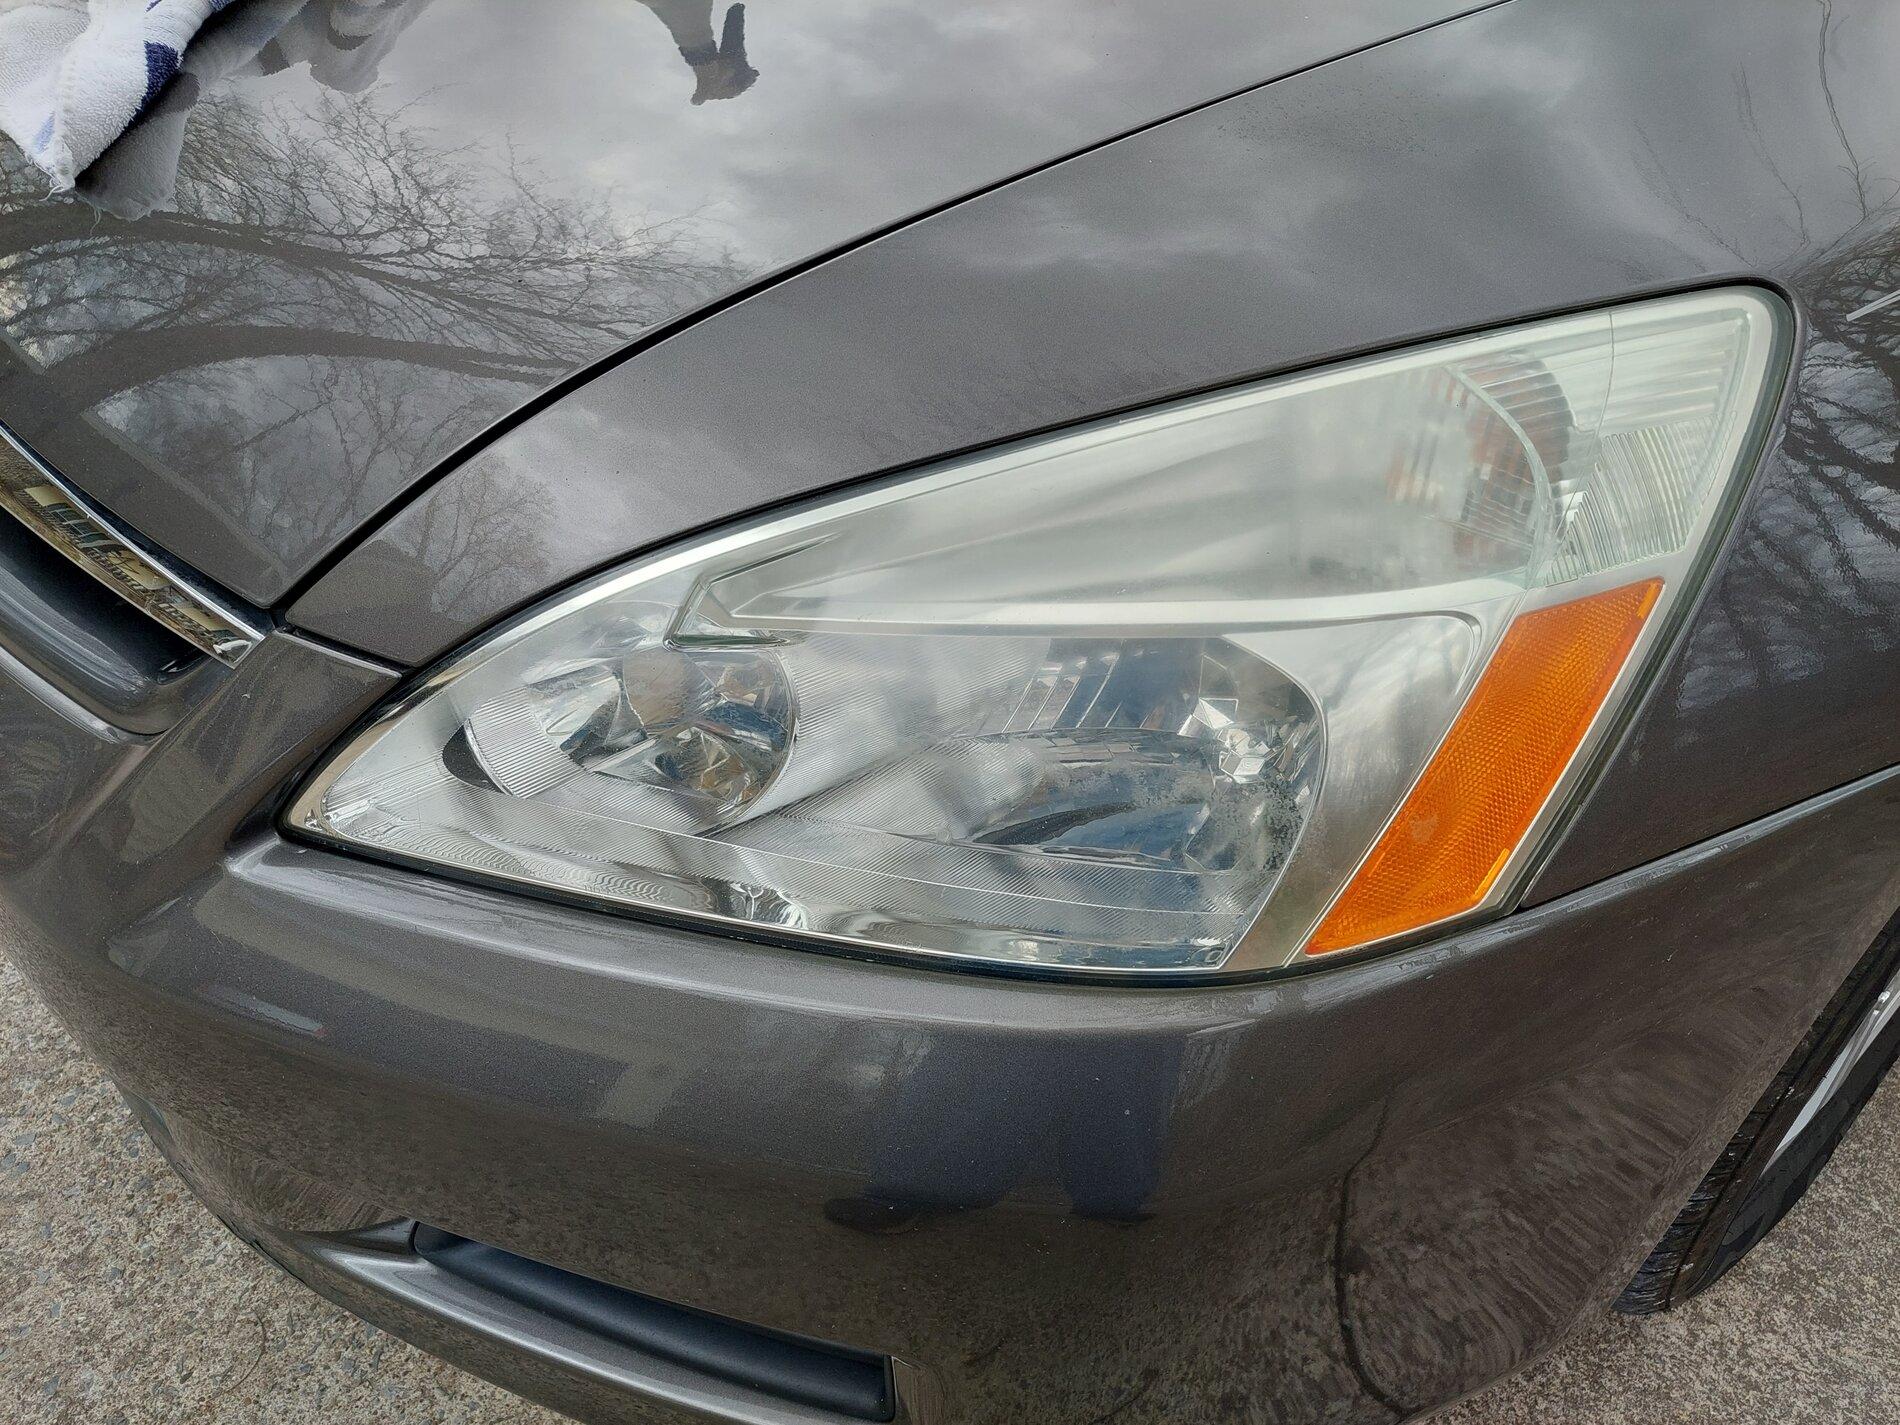 How to Restore headlights using Cerakote Ceramic Headlight